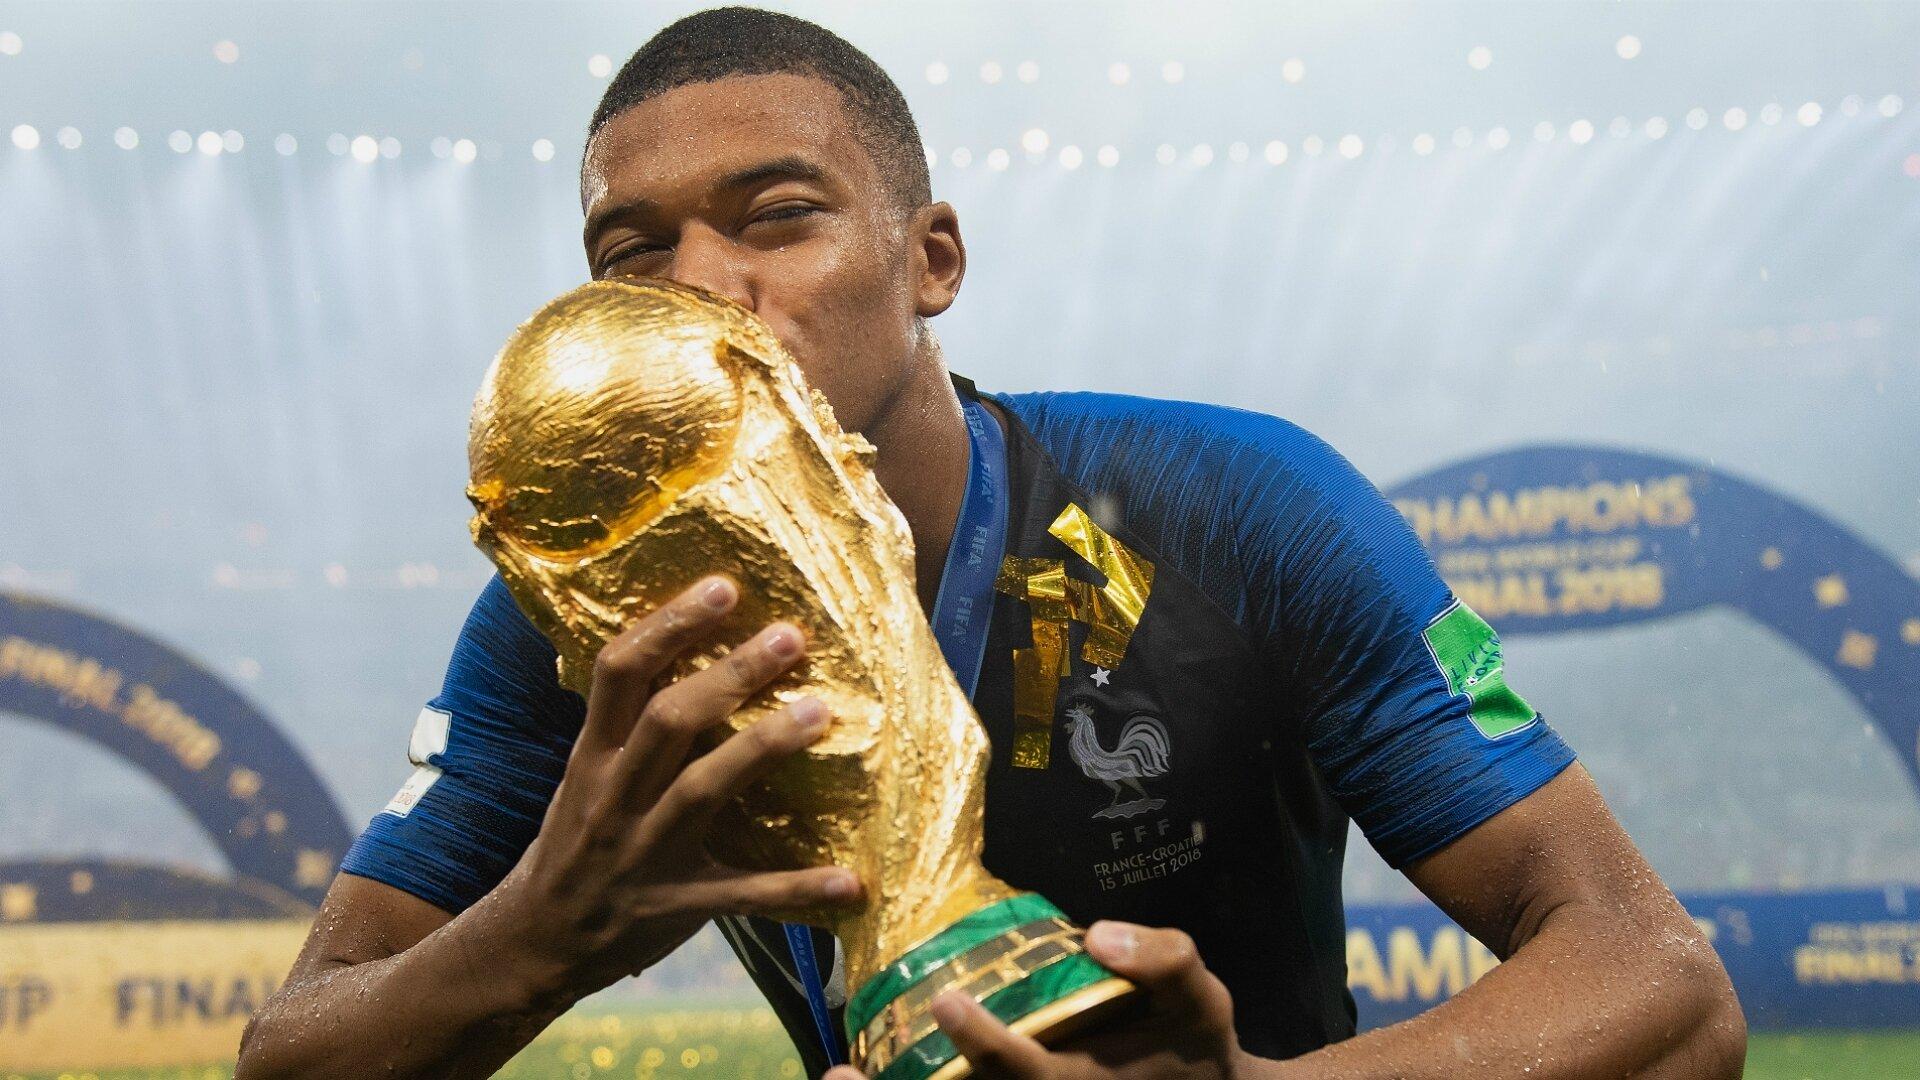 Cậu bé vàng của tuyển Pháp ở World Cup 2018 sẽ phải đối đầu với tuyển Anh ở tứ kết World Cup 2022 (Ảnh: Internet)